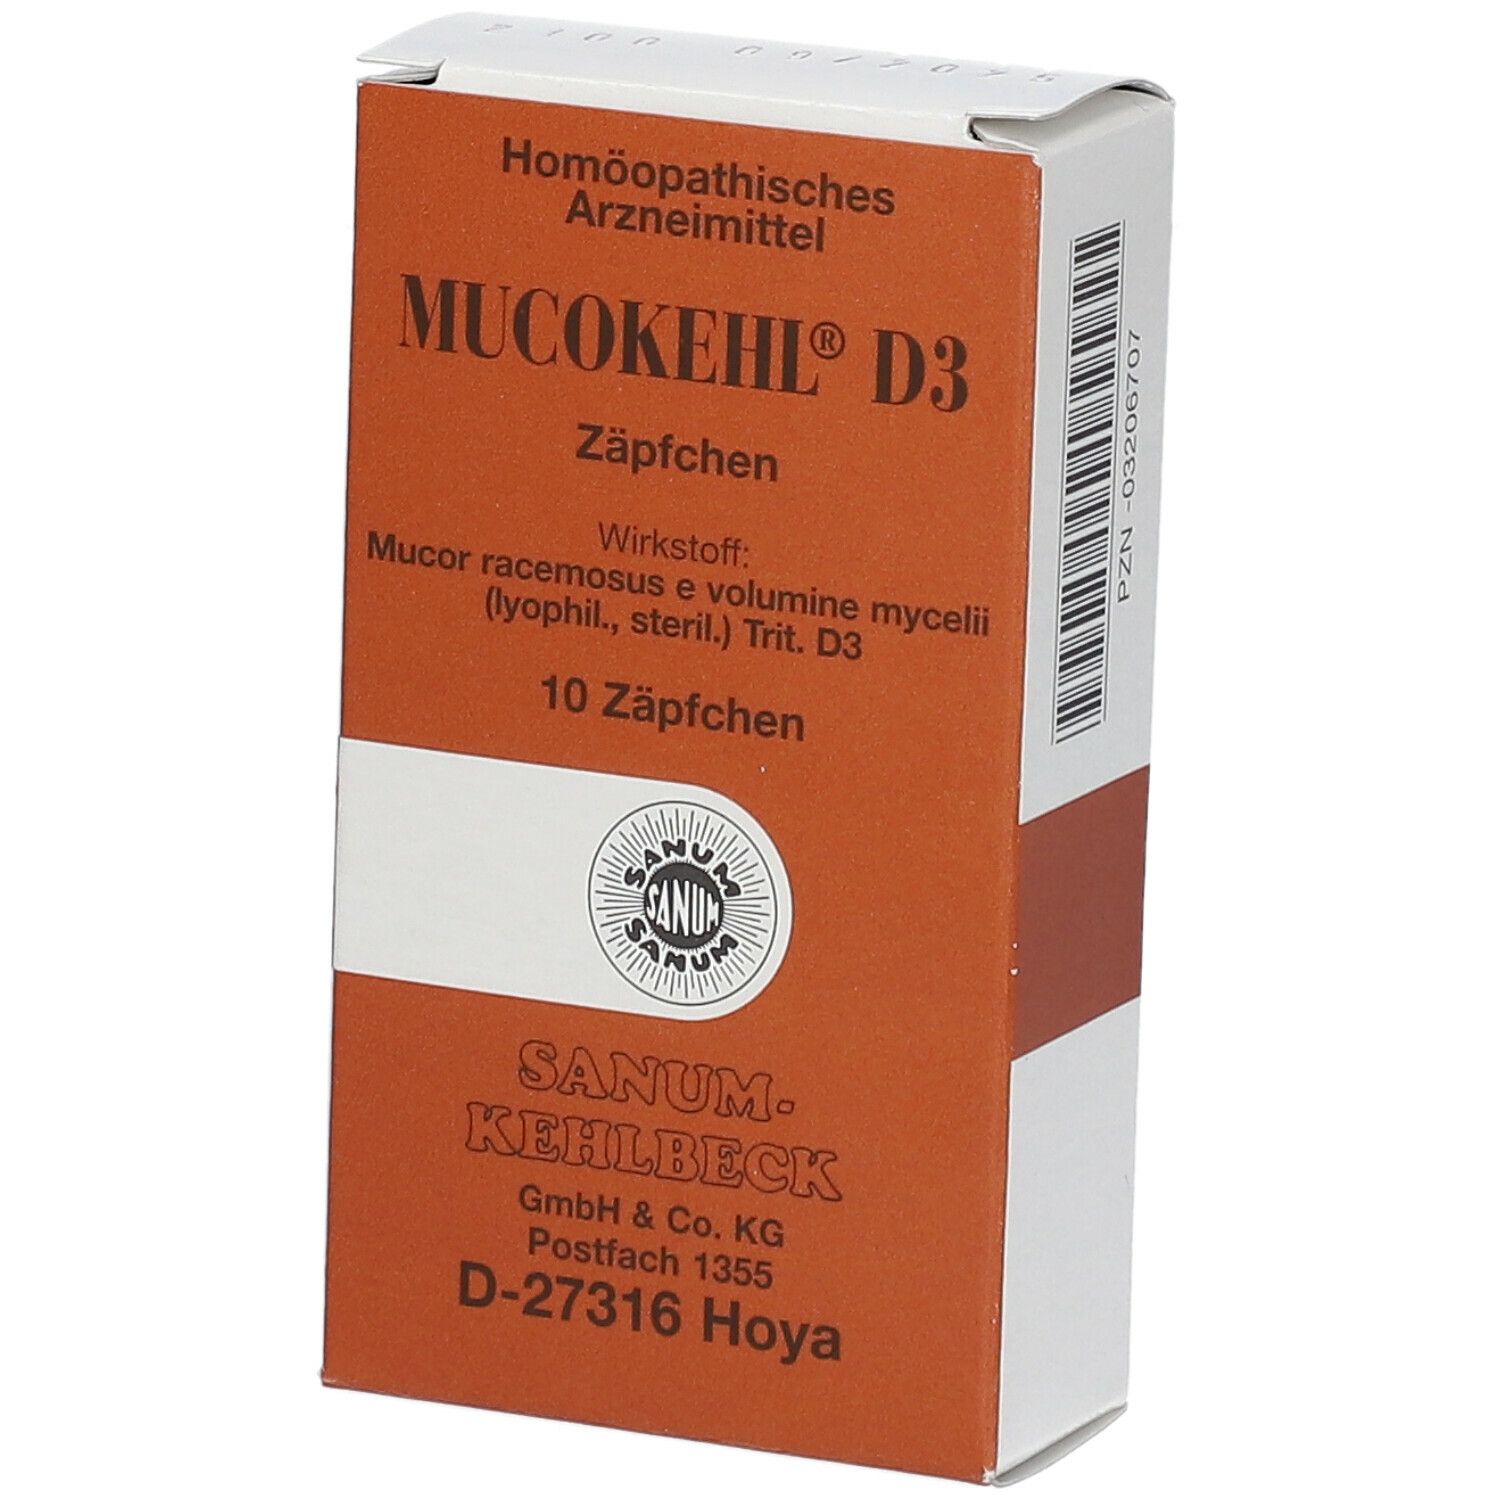 Mucokehl® D3 Suppositorien